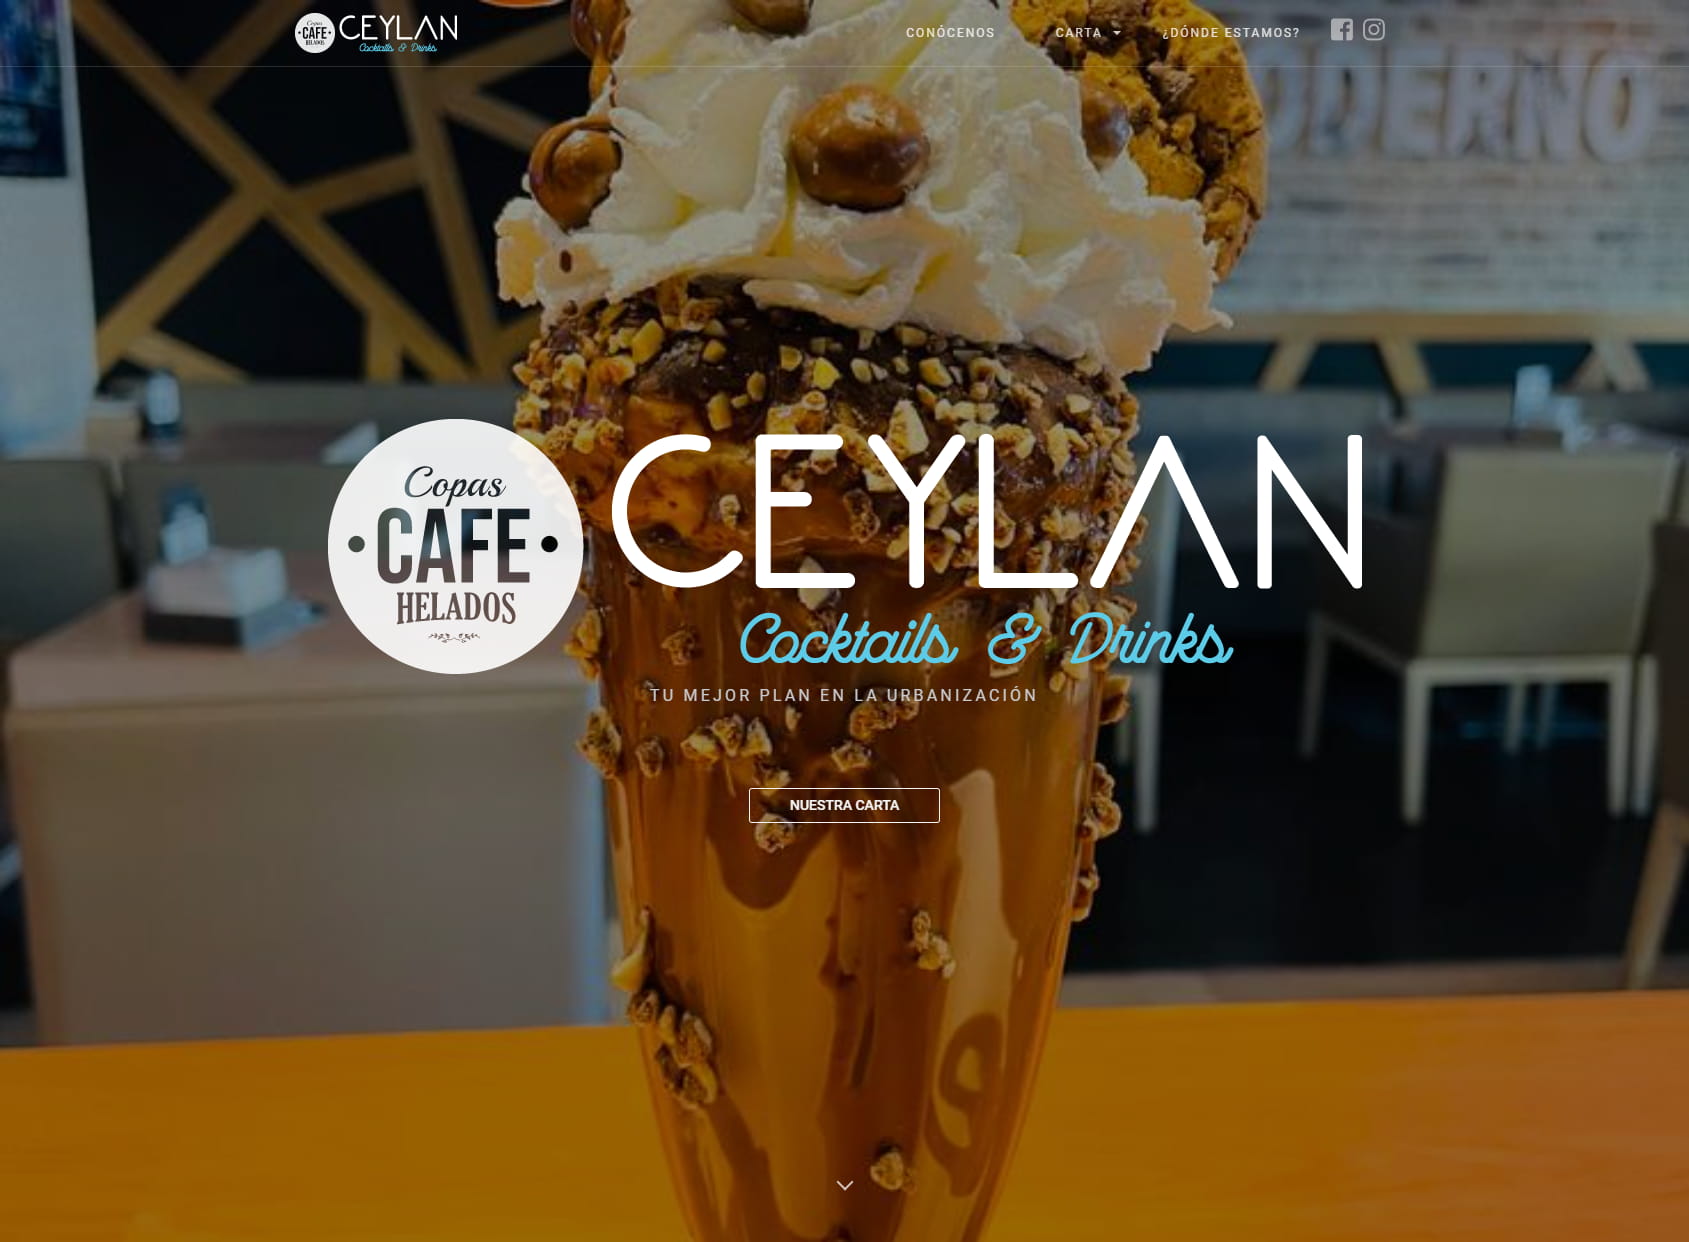 Cafetería Ceylan